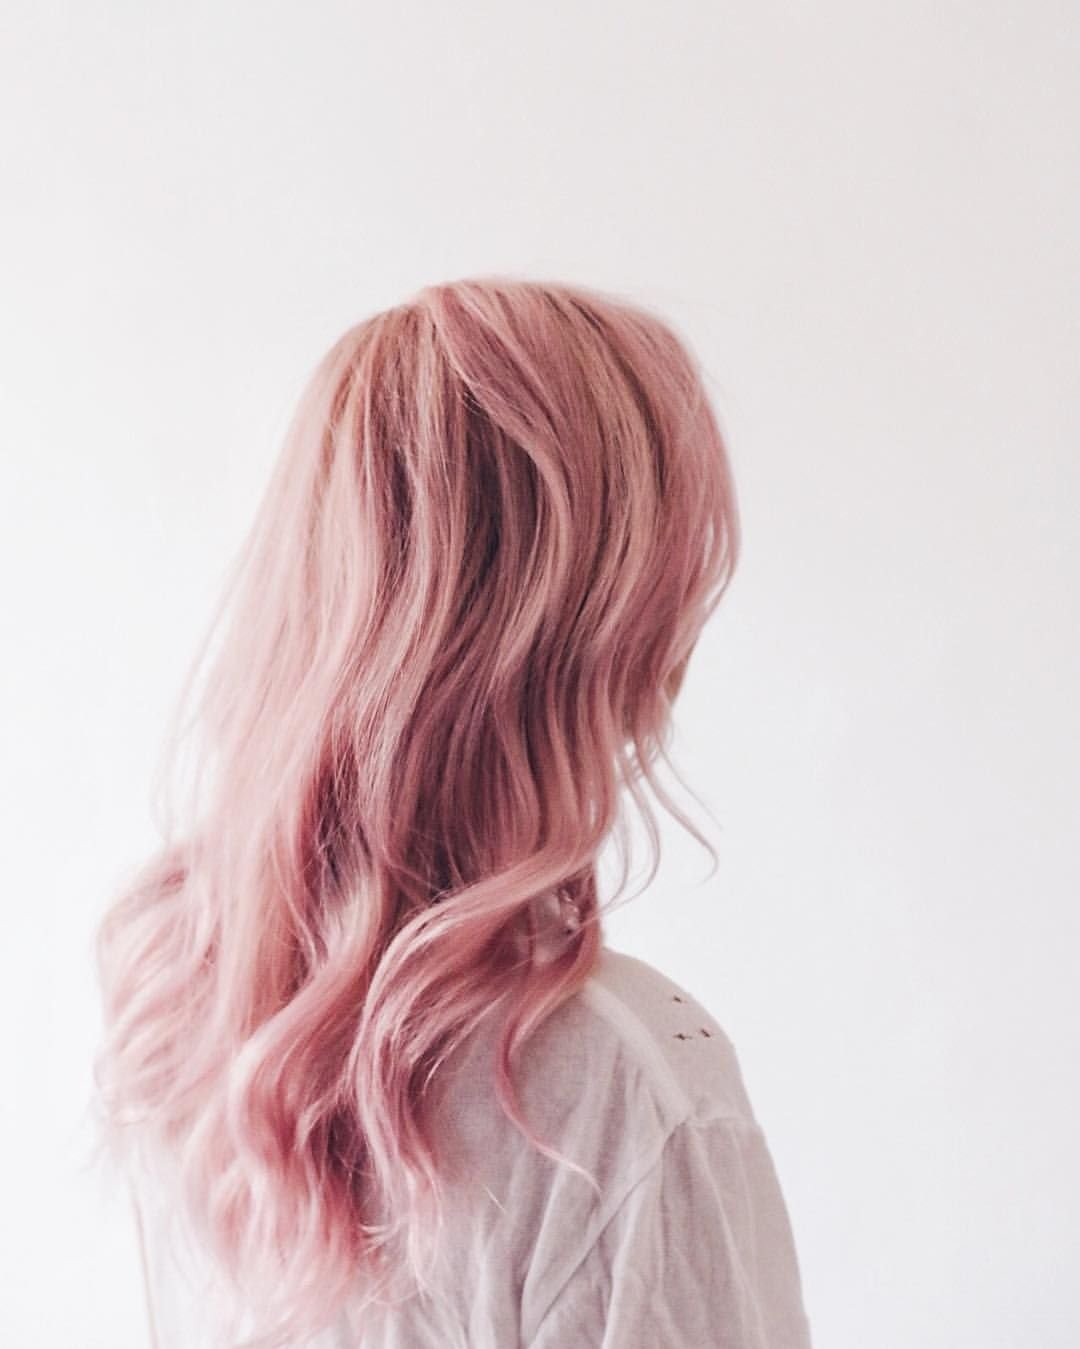 Как сделать пастельный розовый цвет волос